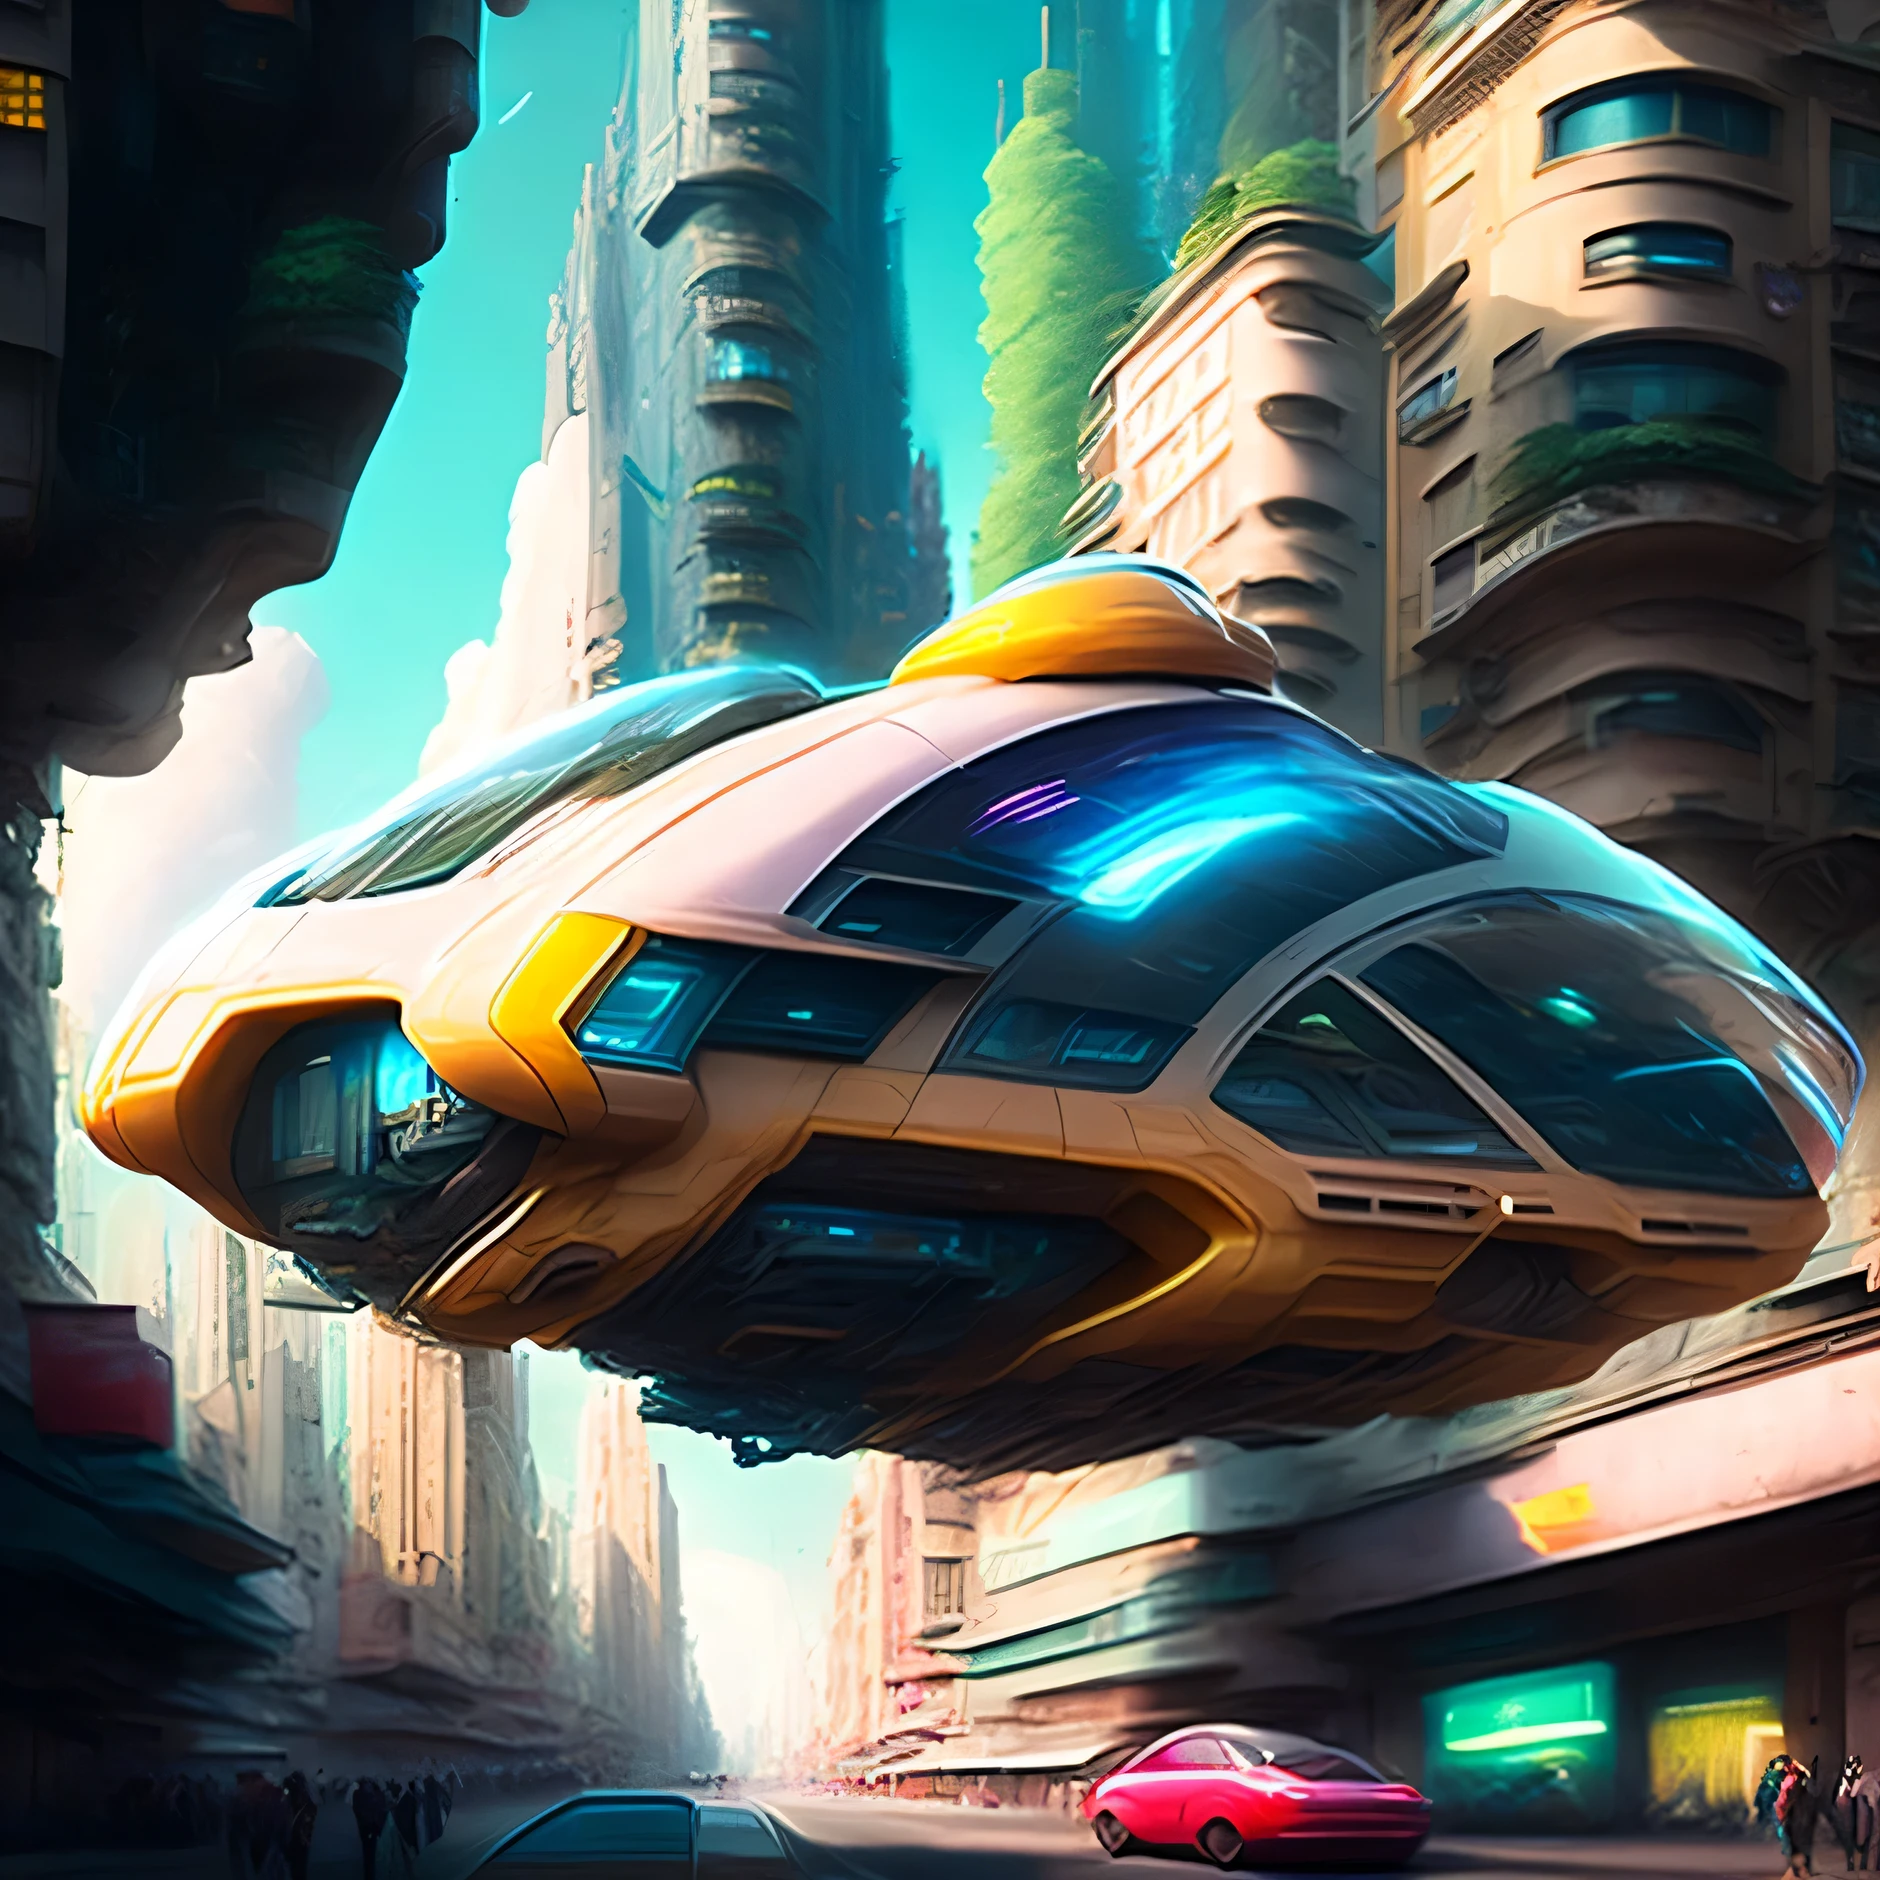 Hover Car dans la future métropole, réaliste, cinématique, cyberpunk, HOVERvoiture STYLE, voiture, en volant, air,ville, rue, THROUGH THE air, conduite, grand, bâtiment, ski-fi, villeSCAPE